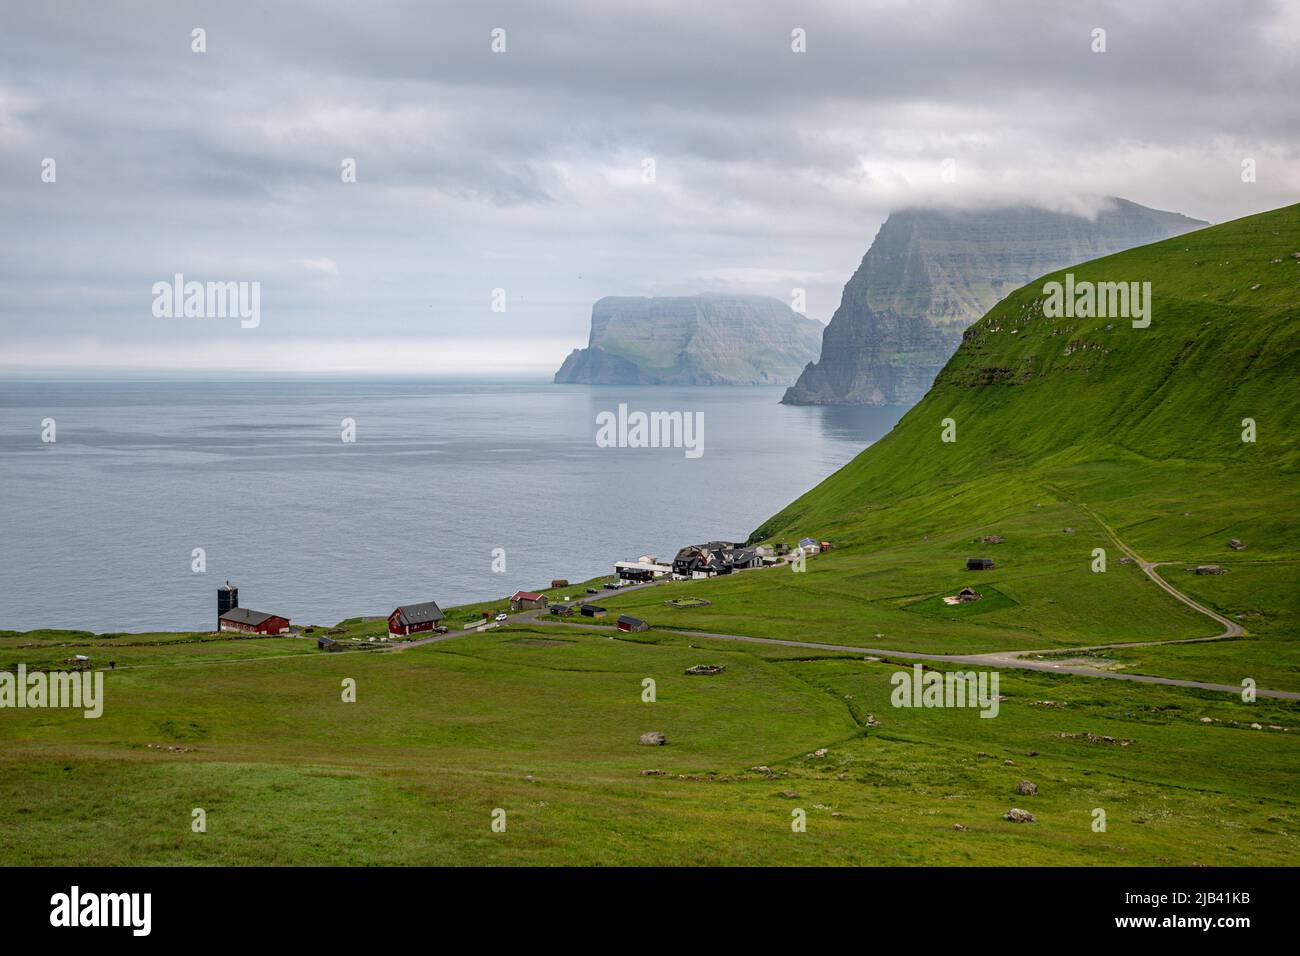 Trollanes village, Kalsoy Island, Faroe Islands Stock Photo